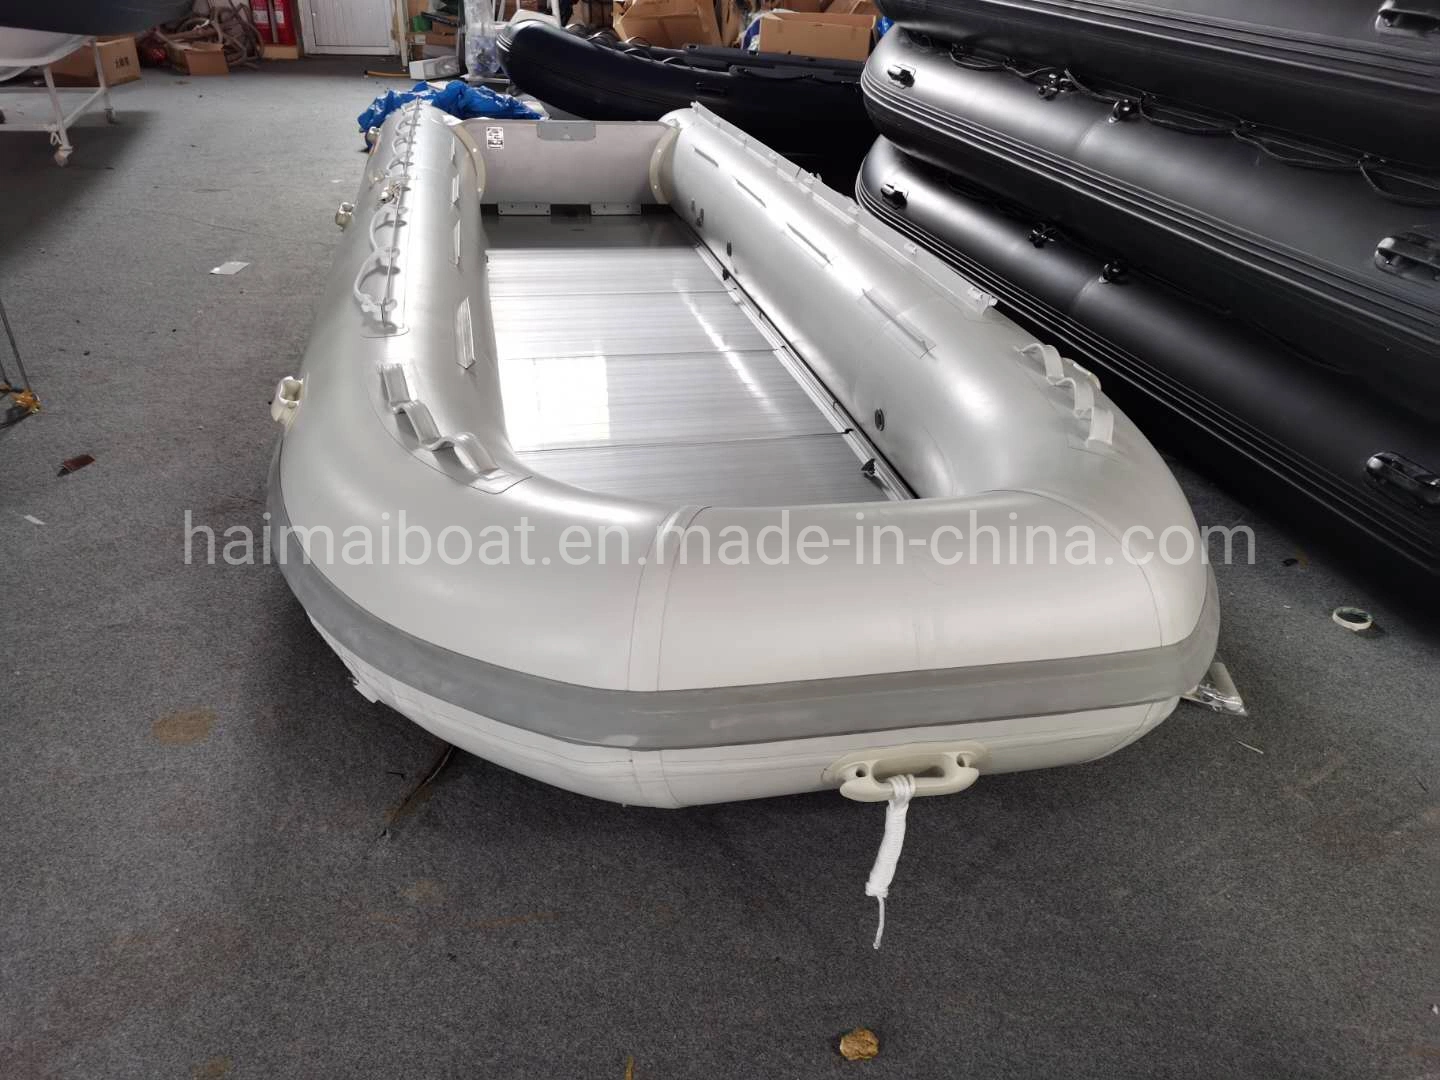 China Fabricante de barco 19,6m 6m Deportes Acuáticos Producto Hypalon Embarcación inflable barco de pesca de la línea de botes de rescate marino barco licitación Panga barco lancha patrullera con CE